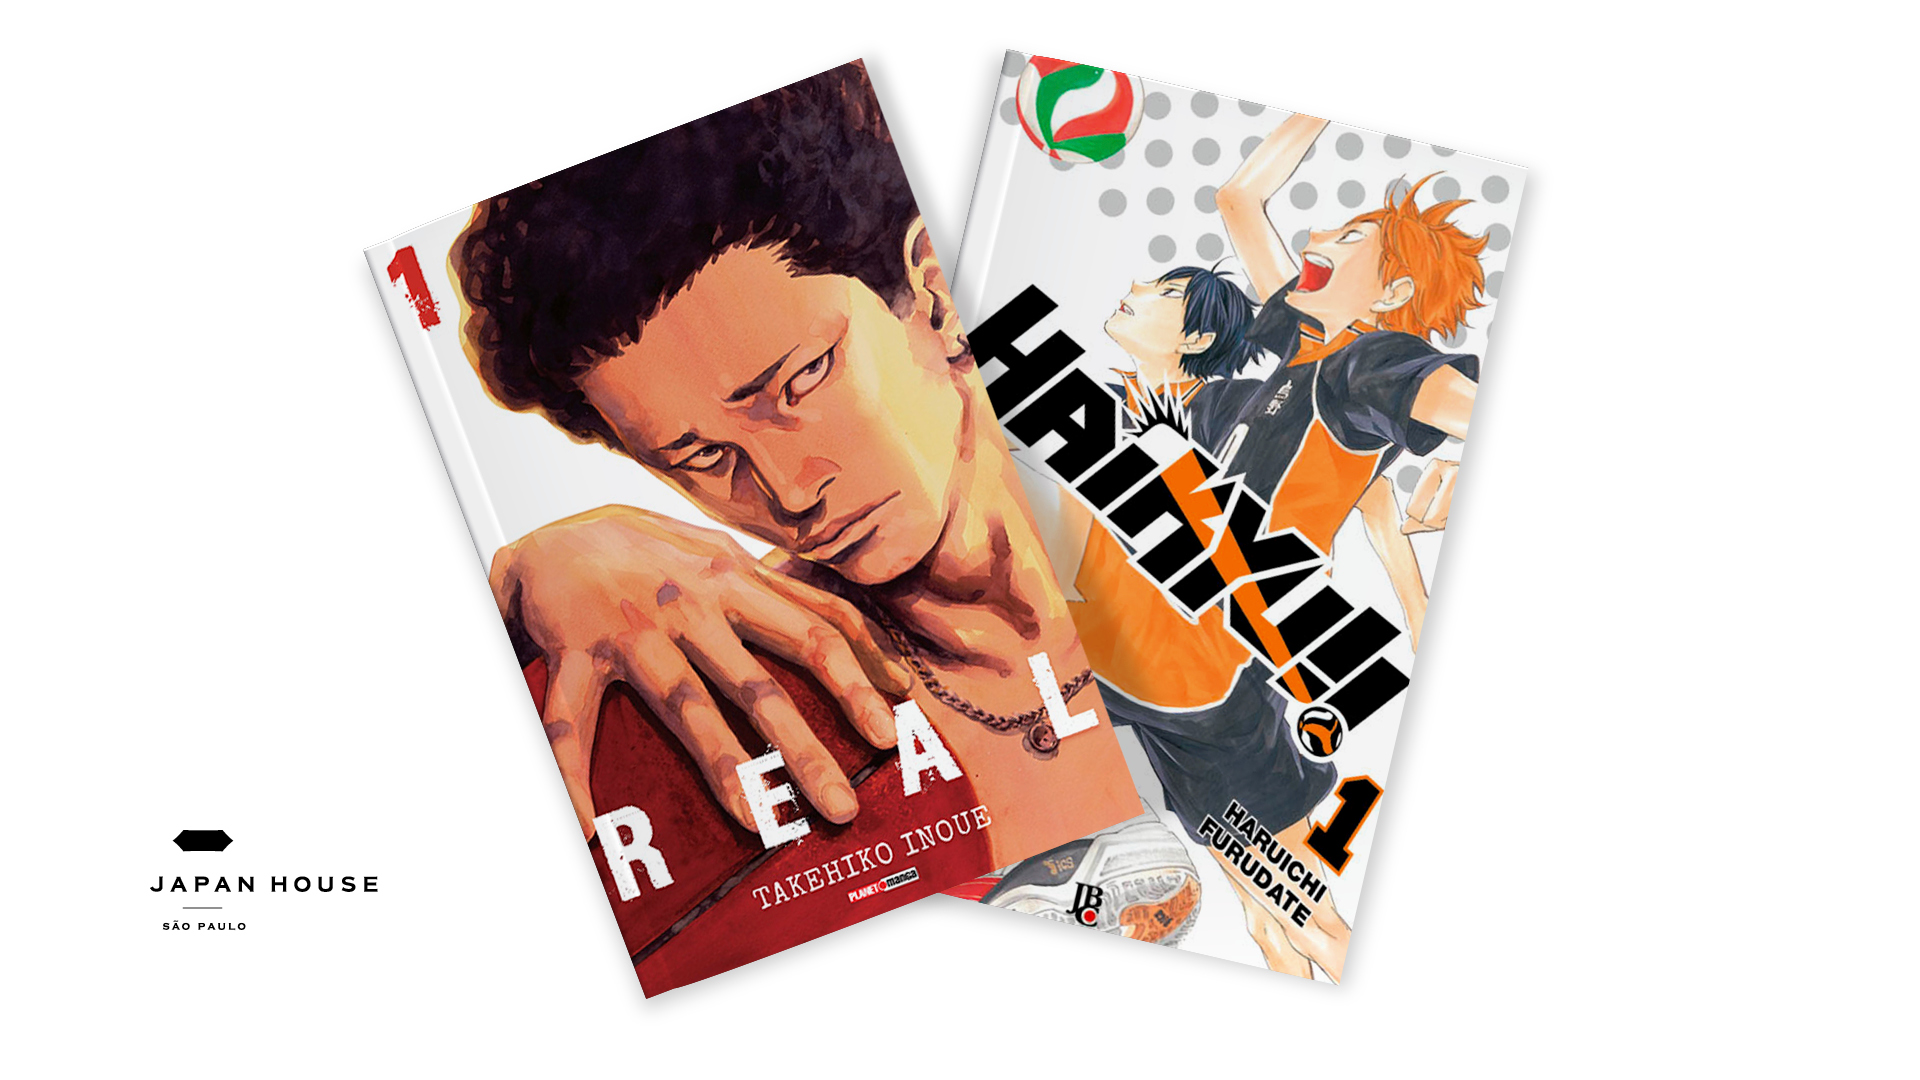 Capas dos mangás Haikyu!!, de Haruichi Furudate, e Real, de Takehiko Inoue, em fundo branco.